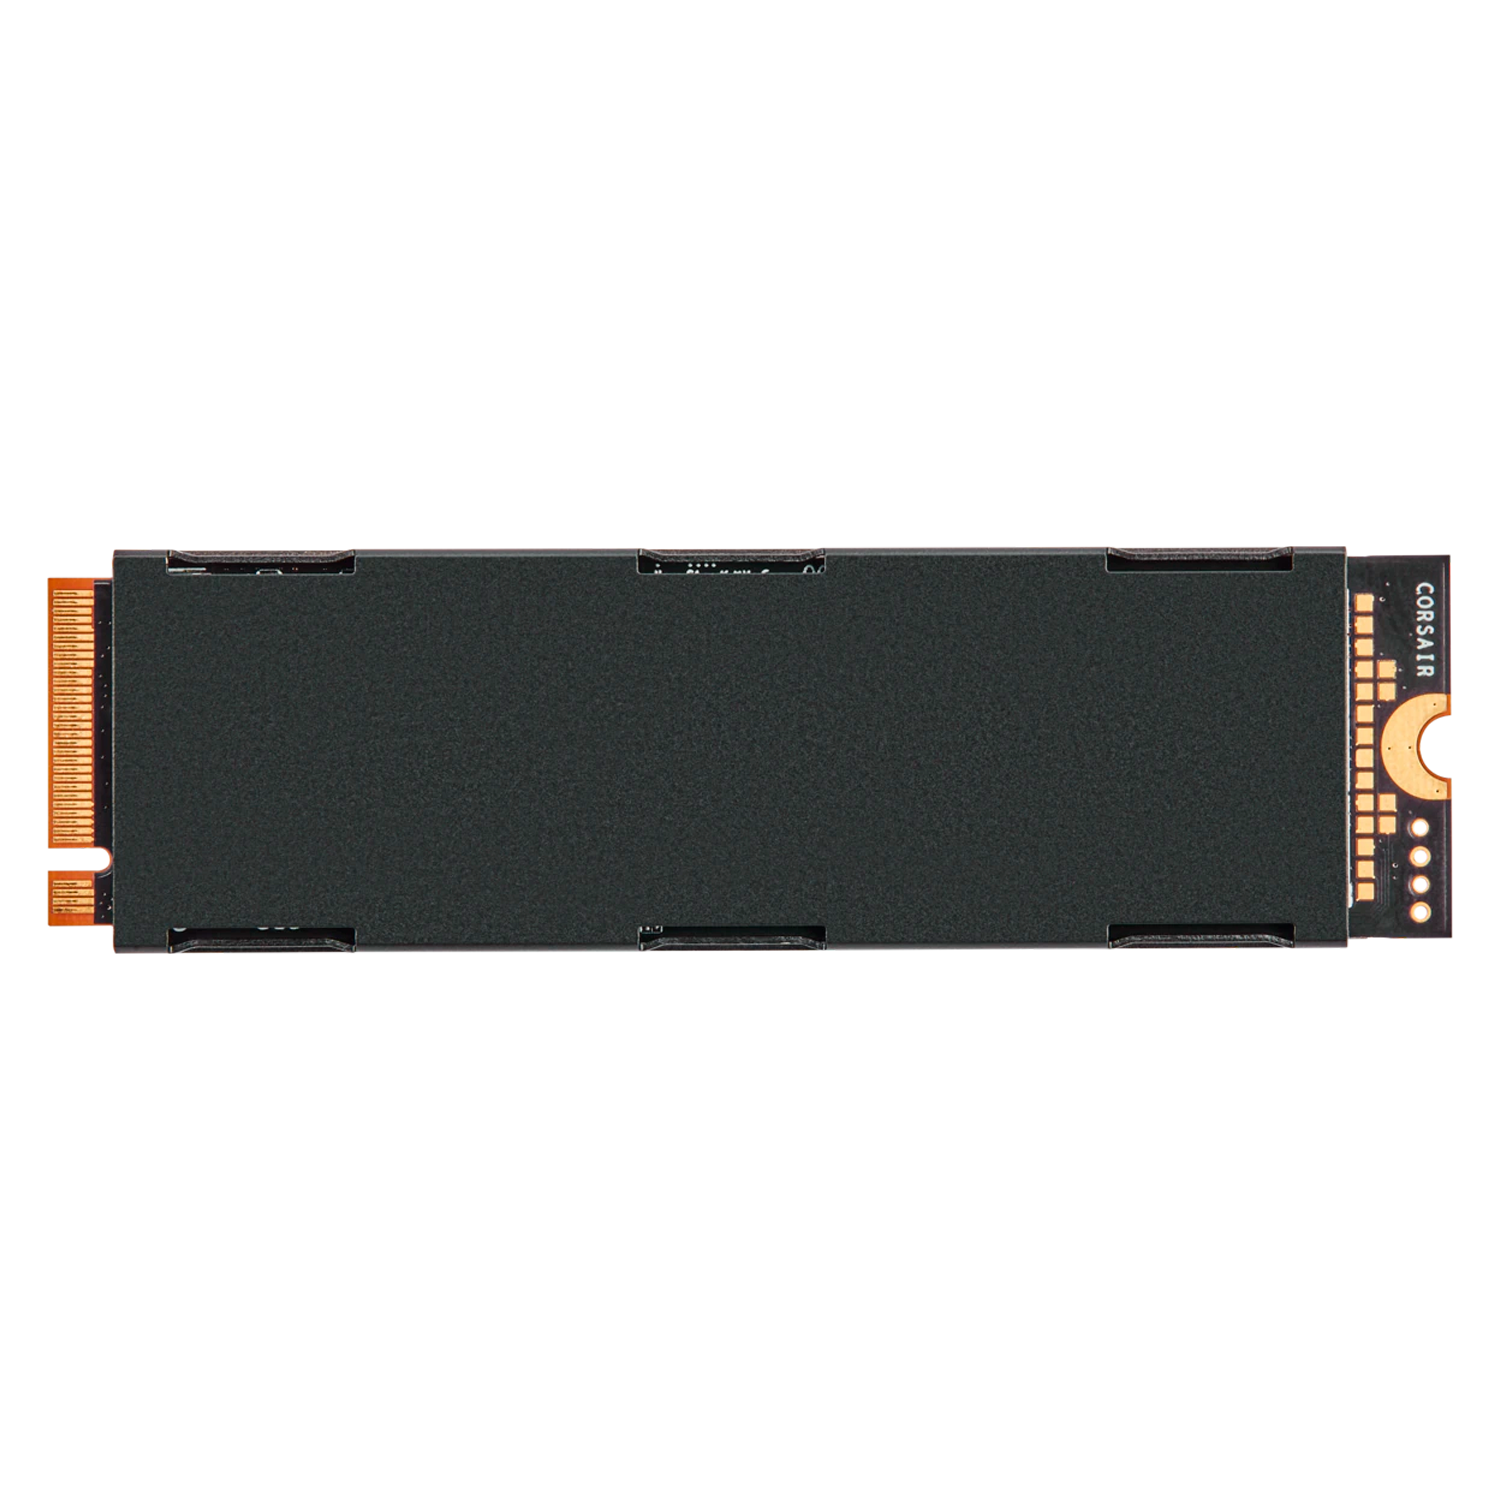 SSD M.2 Corsair MP600 500GB NVMe PCIe Gen 4 - CSSD-F500GBMP600R2